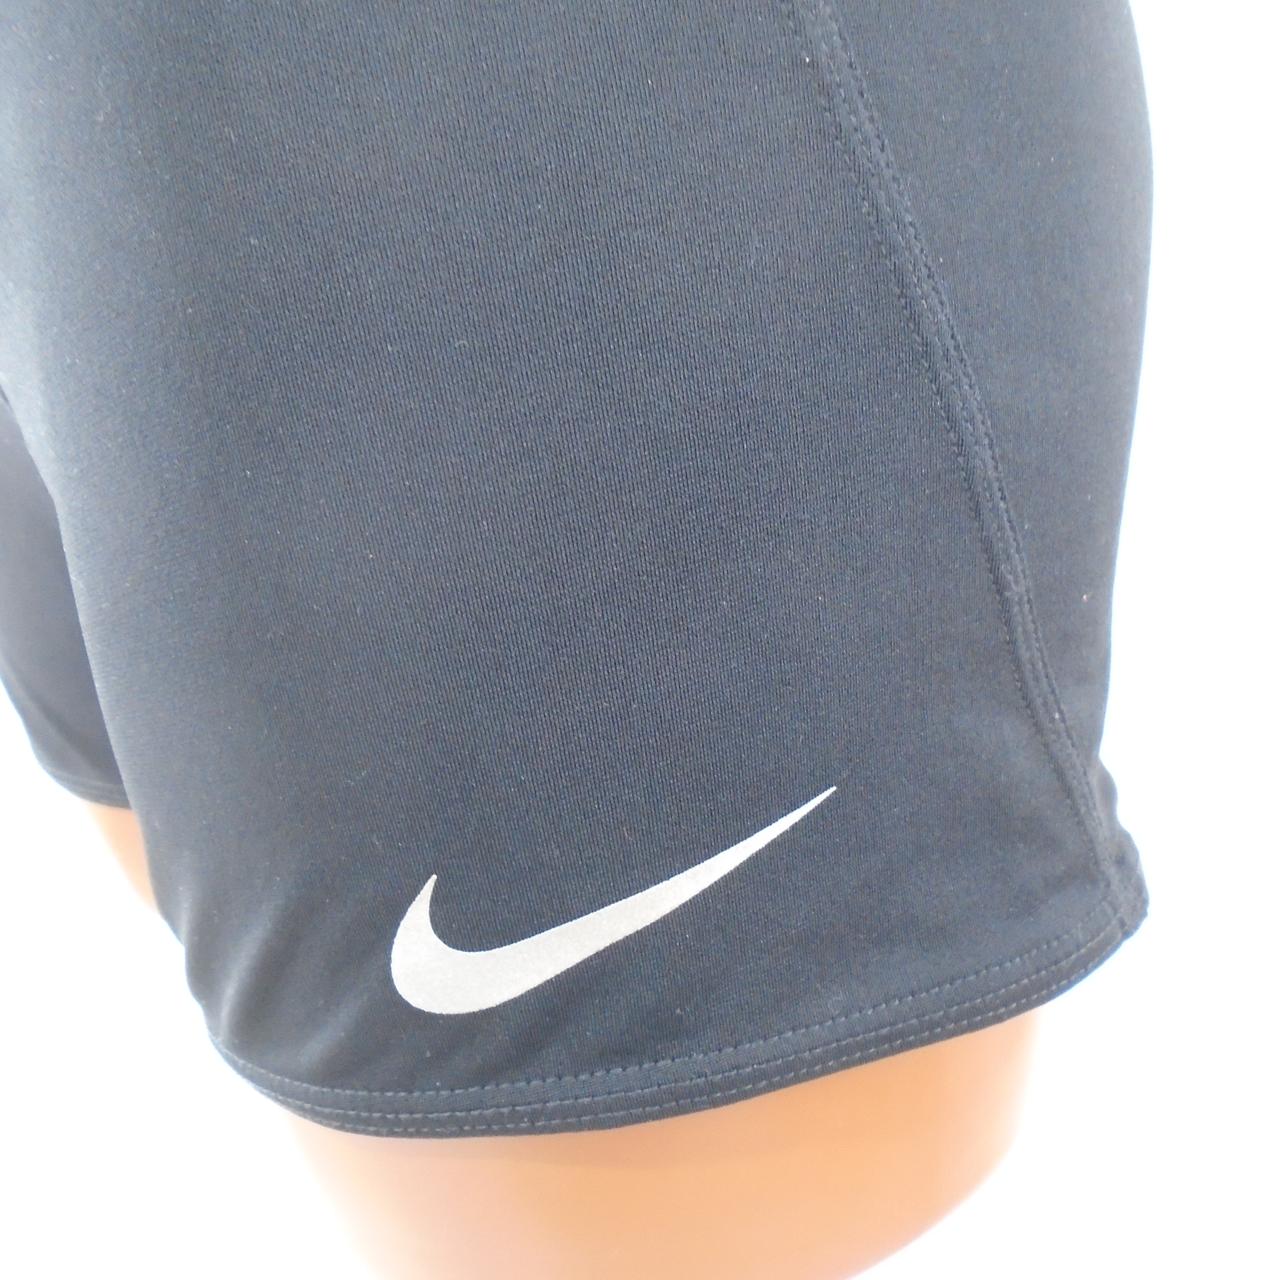 Damen Shorts Nike. Schwarz. L. Gebraucht. Gut